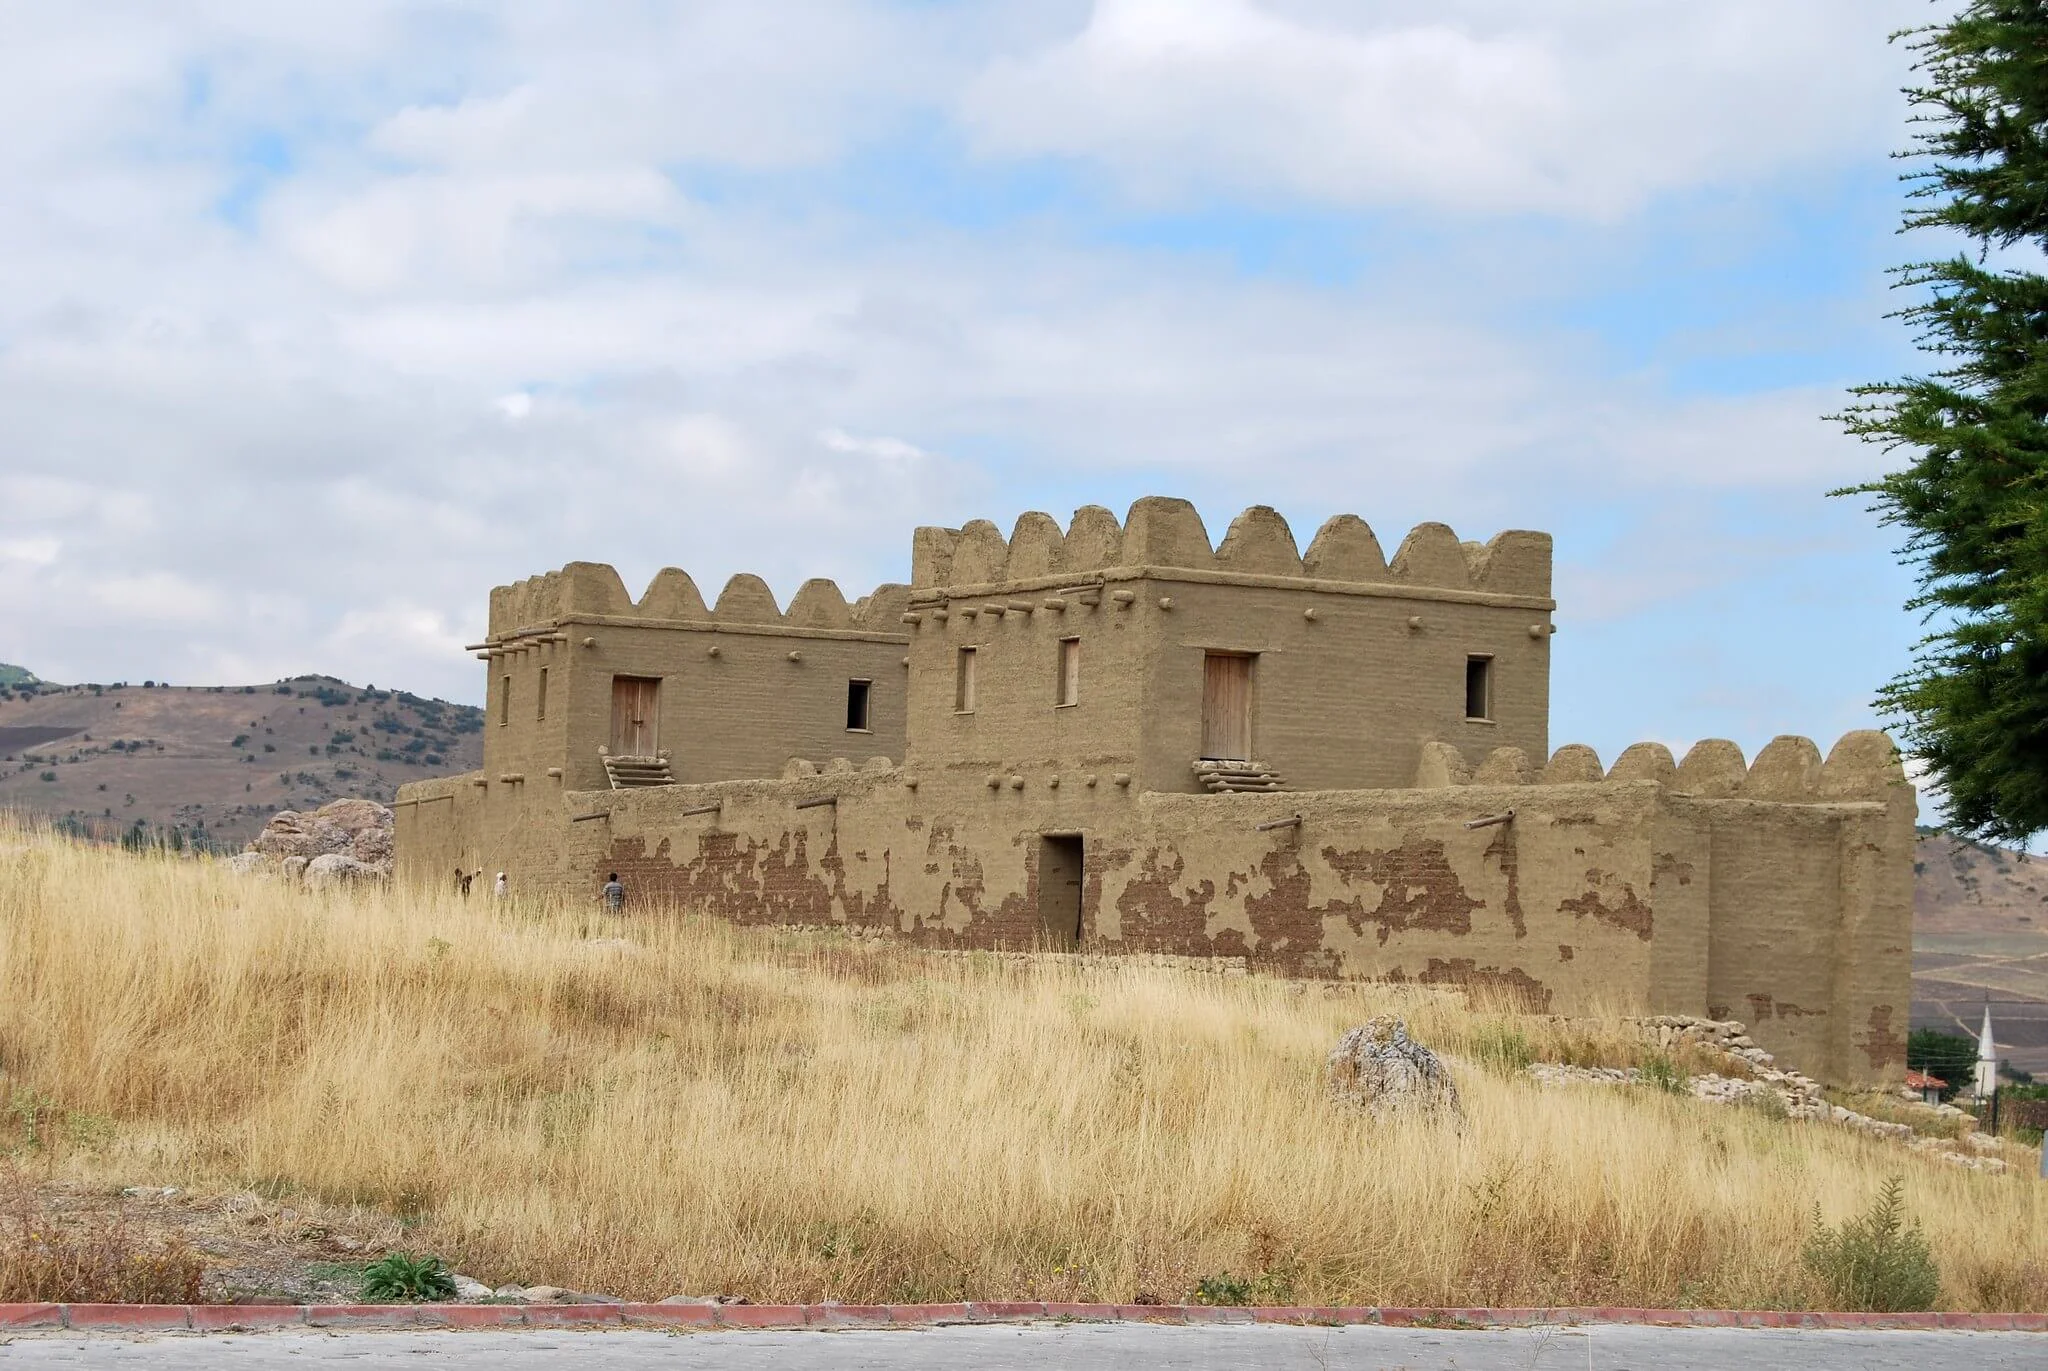 Γνωρίζοντας τα Βασικά Κέντρα των Χετταίων σ’ Ένα Ταξίδι στους Αρχαιολογικούς Χώρους της Κεντρικής Τουρκίας